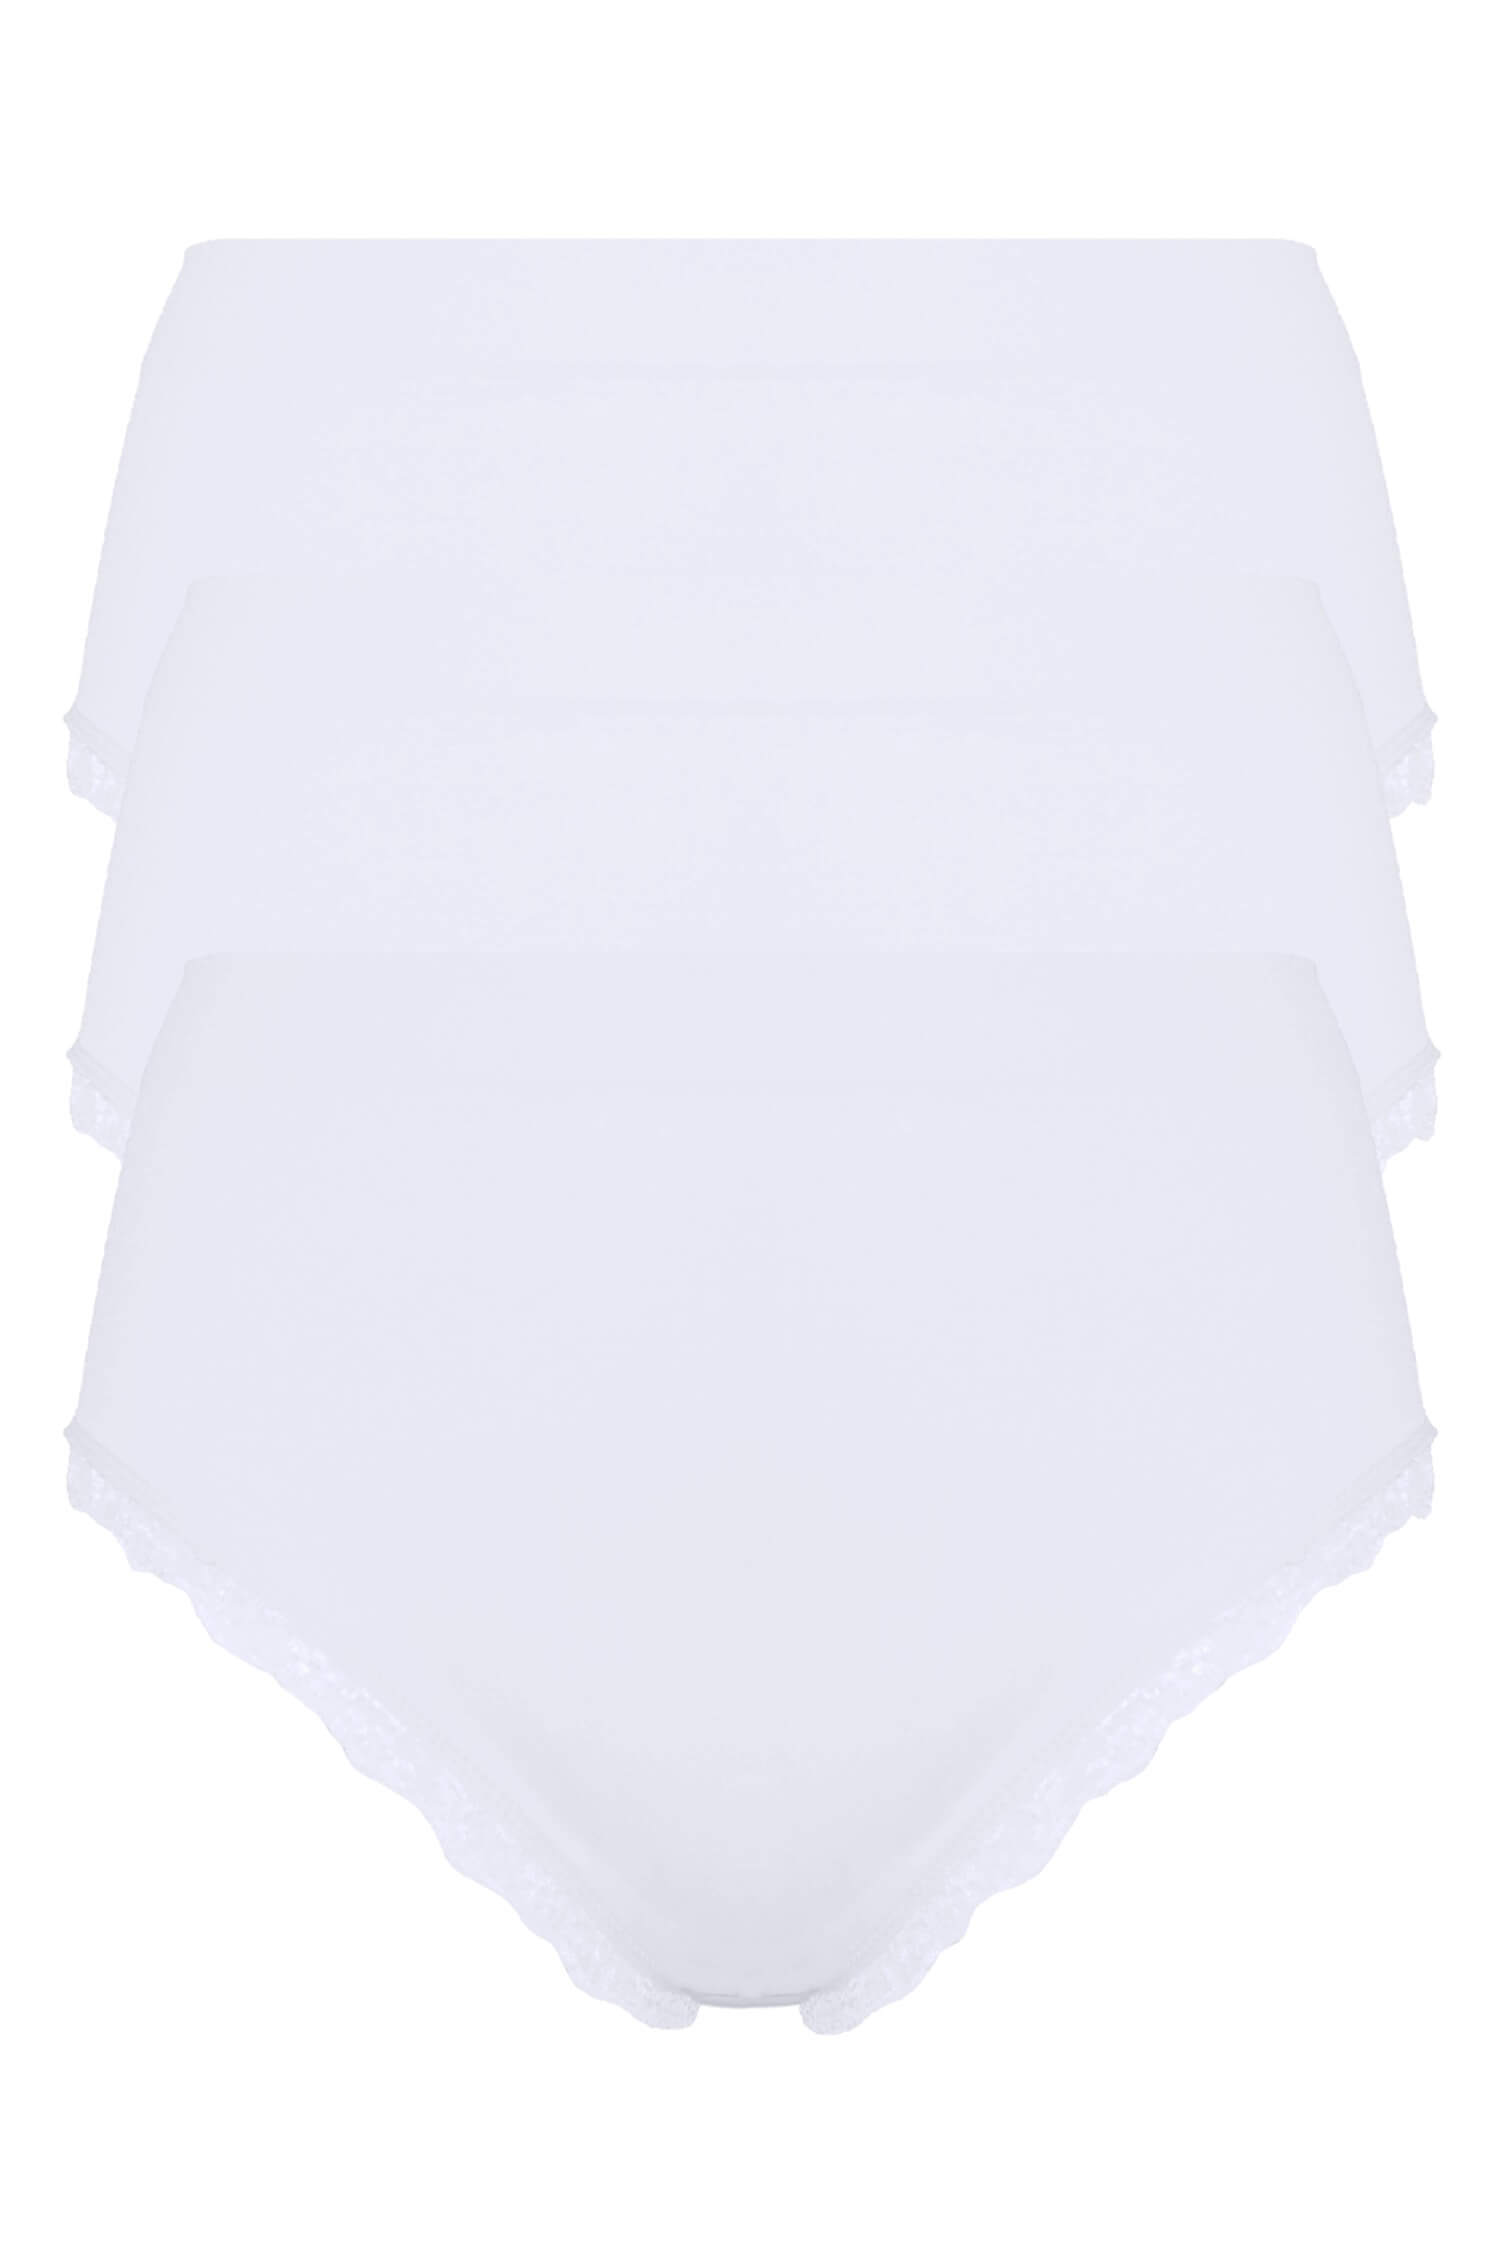 Ula dámské vyšší kalhotky BLS-05 - 3bal XL bílá